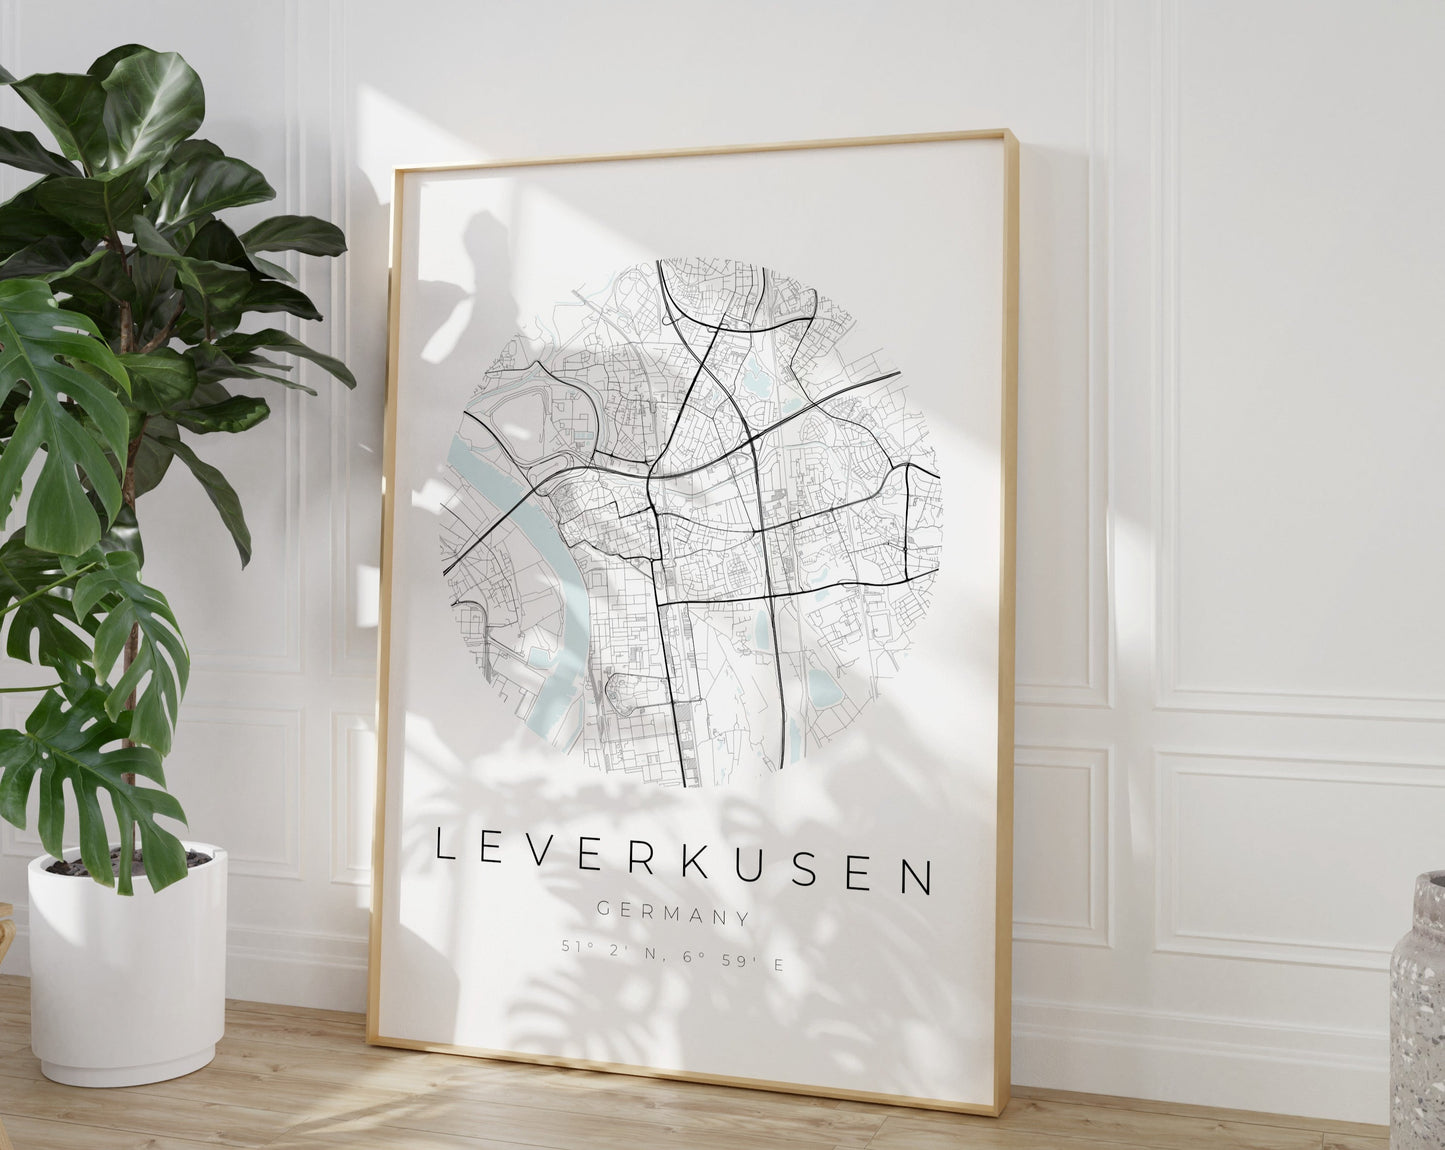 Leverkusen Poster | Karte kreisförmig